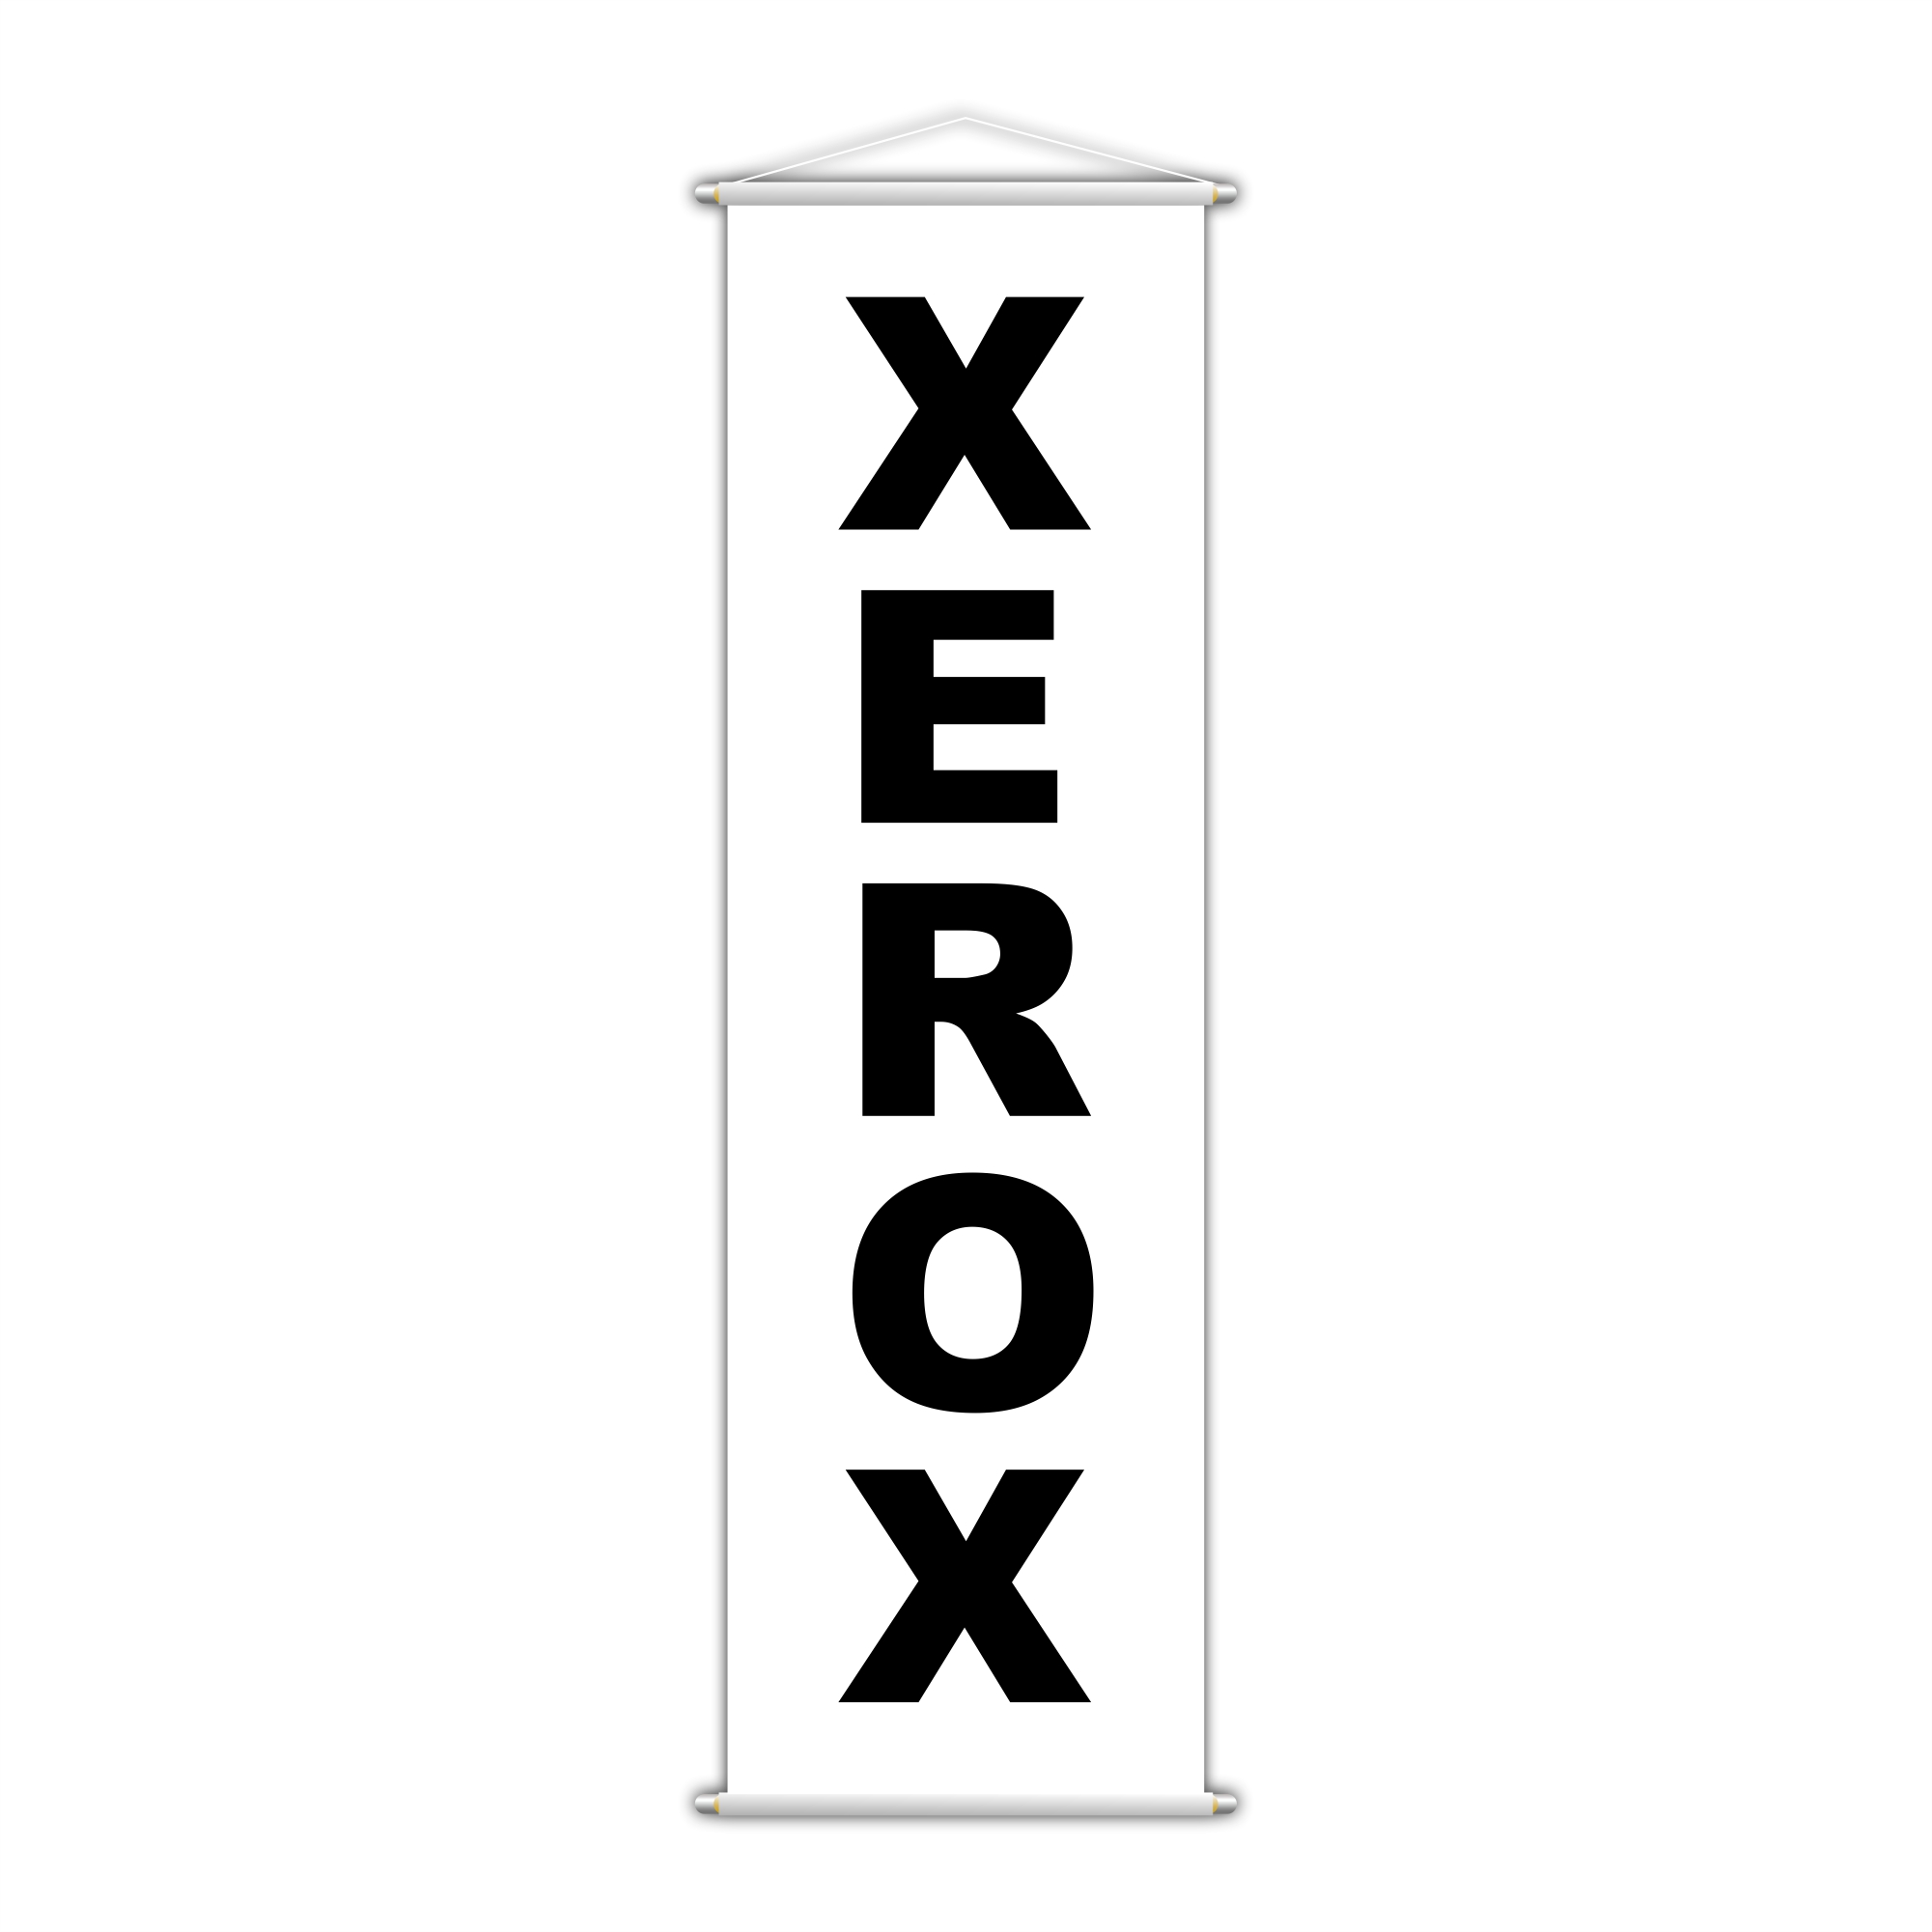 Banner Xerox Impressão Gráfica Serviço Lona Branco 100x30cm